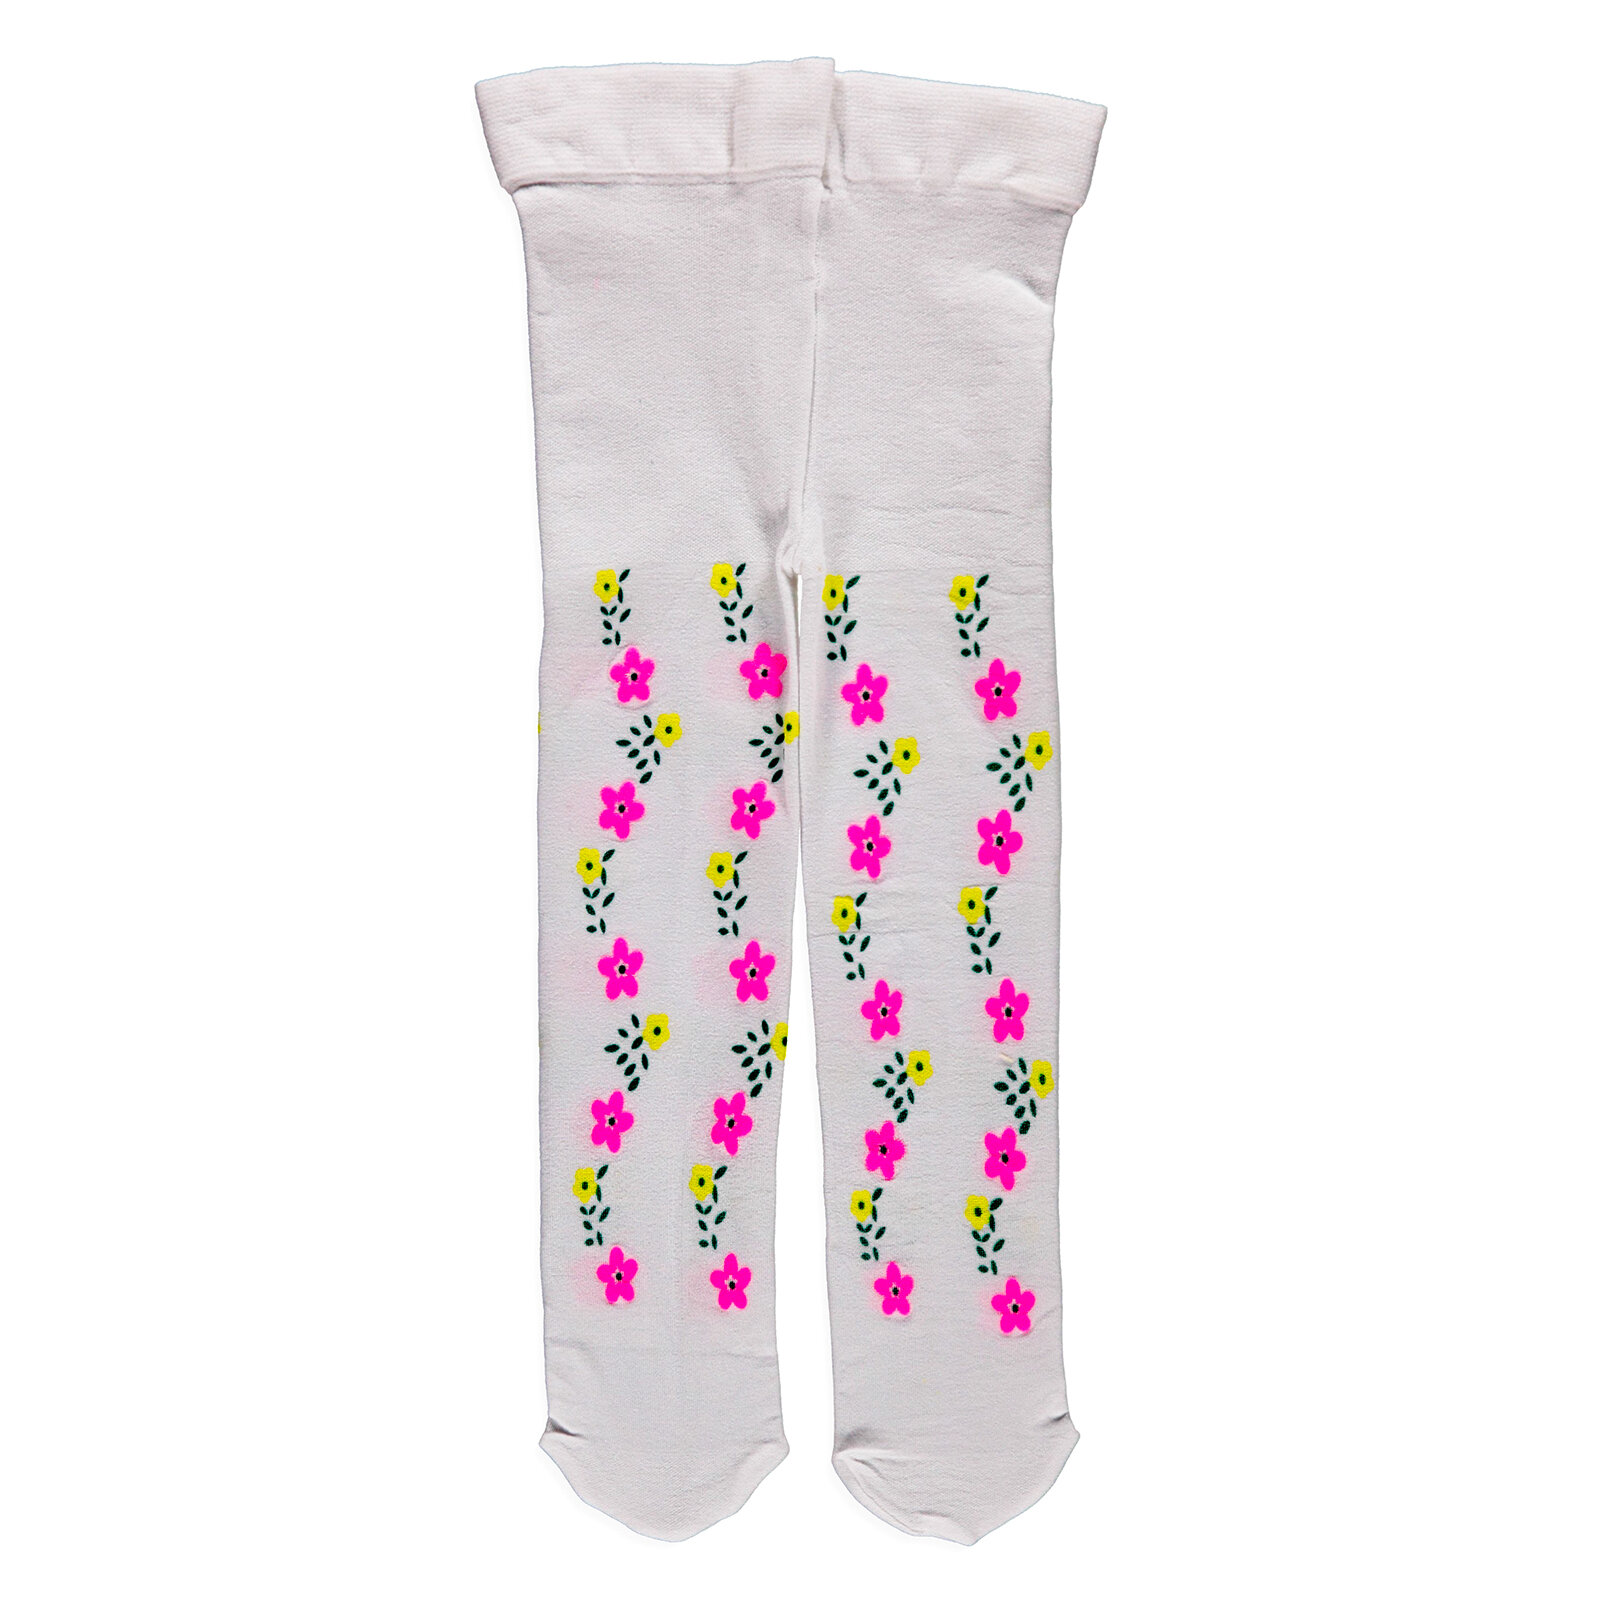 Çiçekli-Işık Baskılı Mus Külotlu Çorap